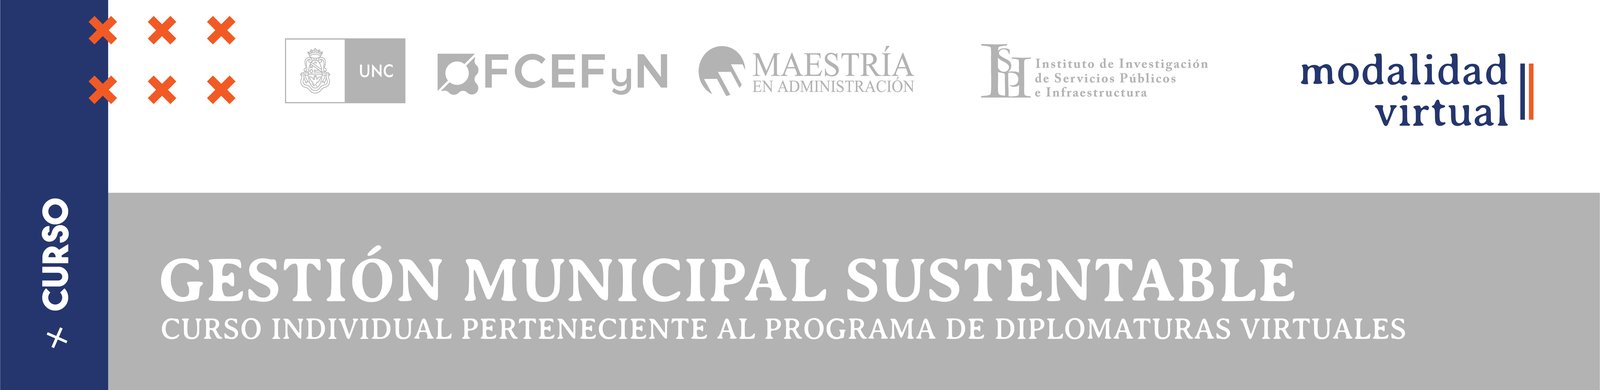 Gestión Municipal Sustentable-03.jpg